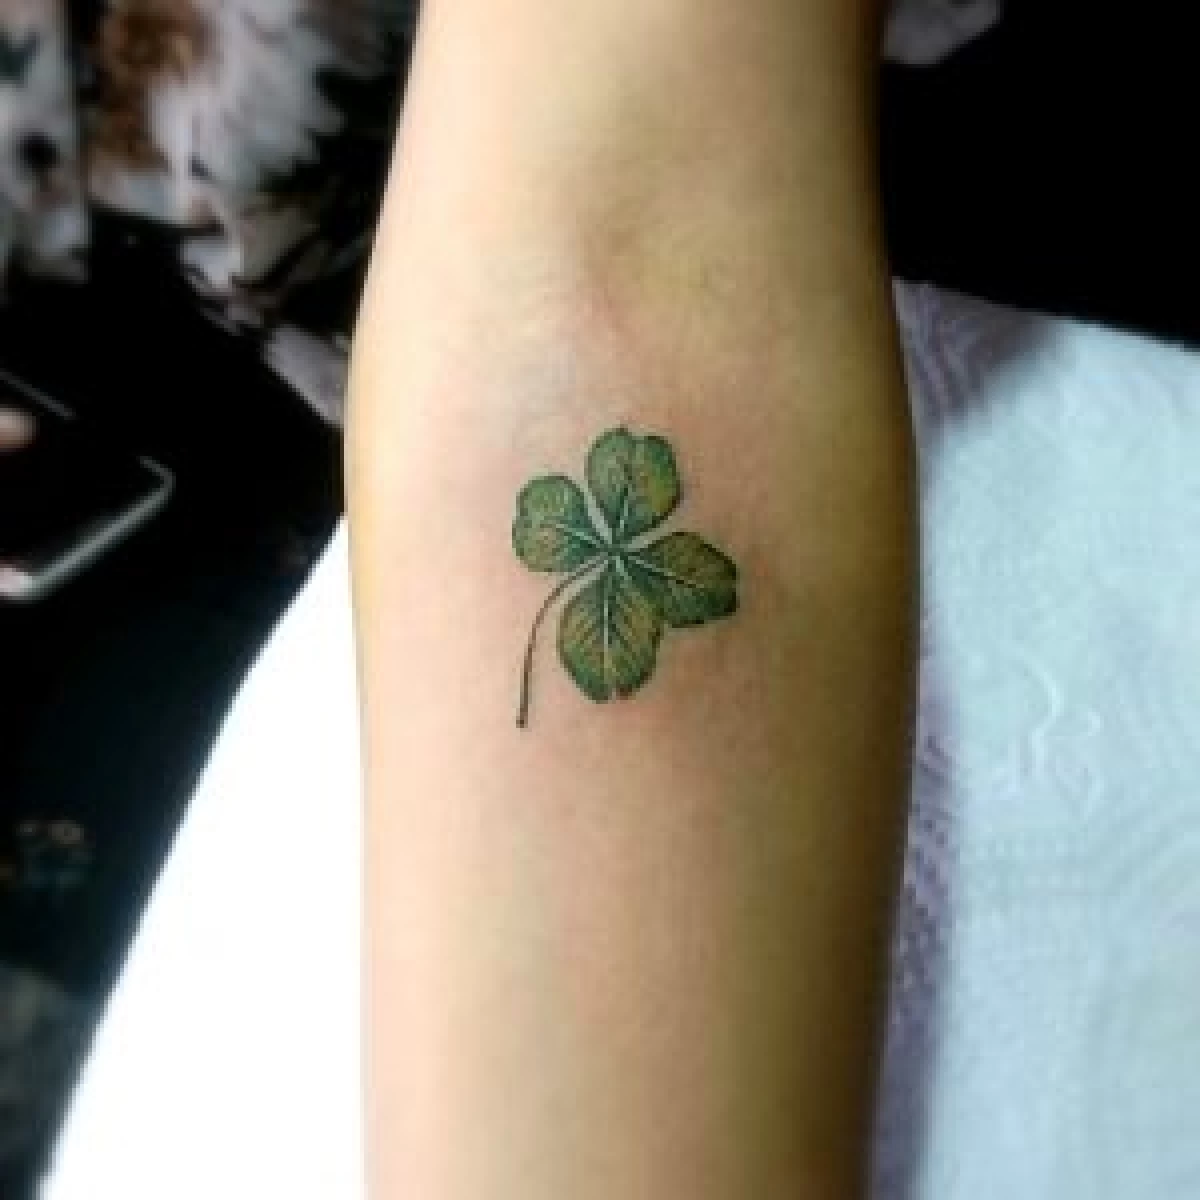 Small-realistic-Shamerock-Tattoo-on-arm-Celtic-Irish-Tattoo-The-Black-Hat-Tattoo-Dublin-2018-1-300x300